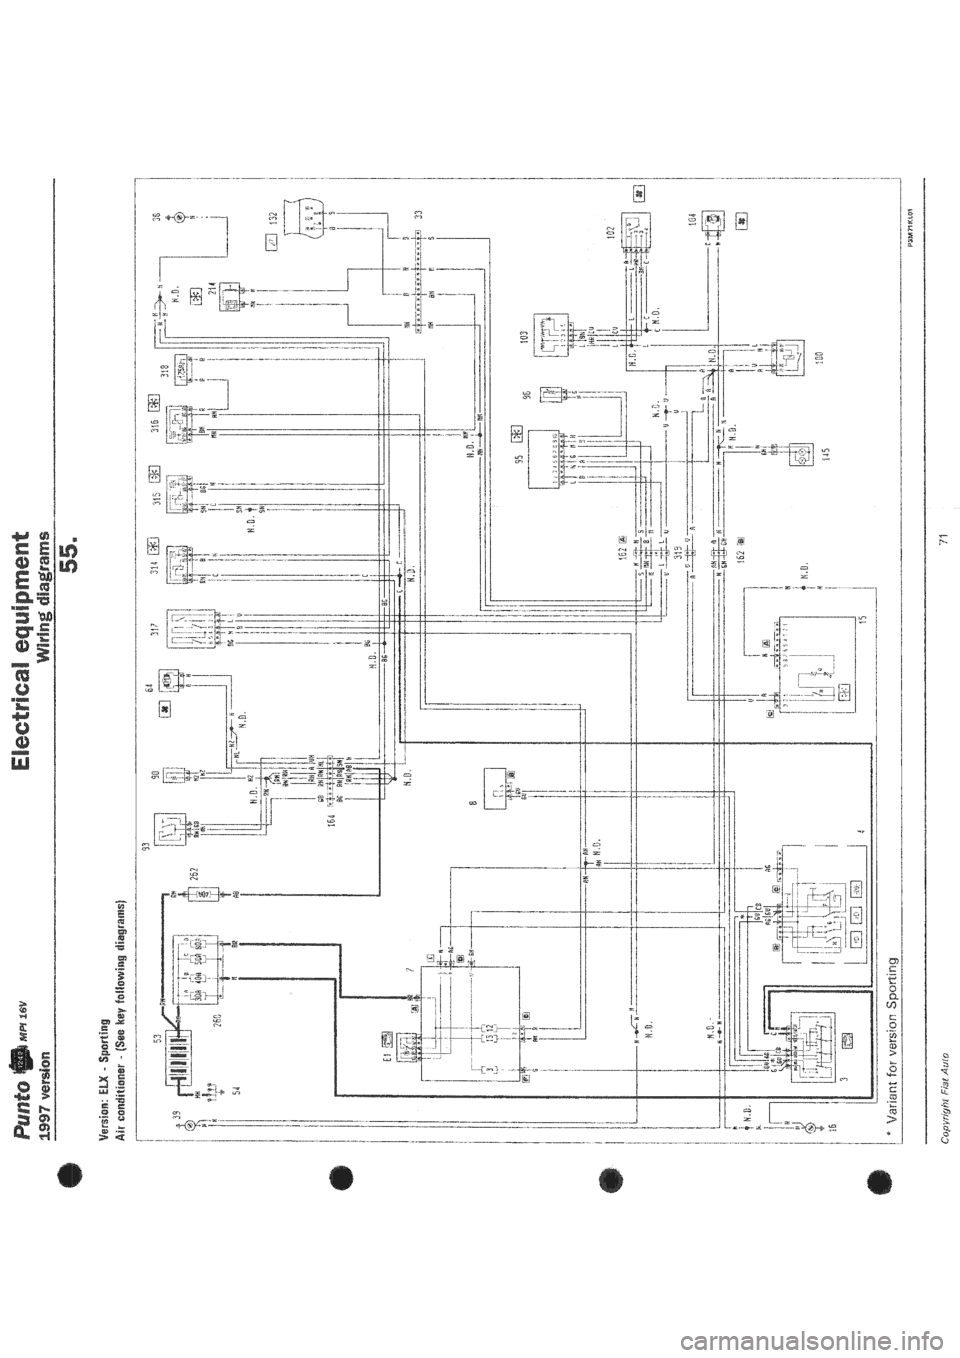 FIAT PUNTO 1997 176 / 1.G Wiring Diagrams Workshop Manual 